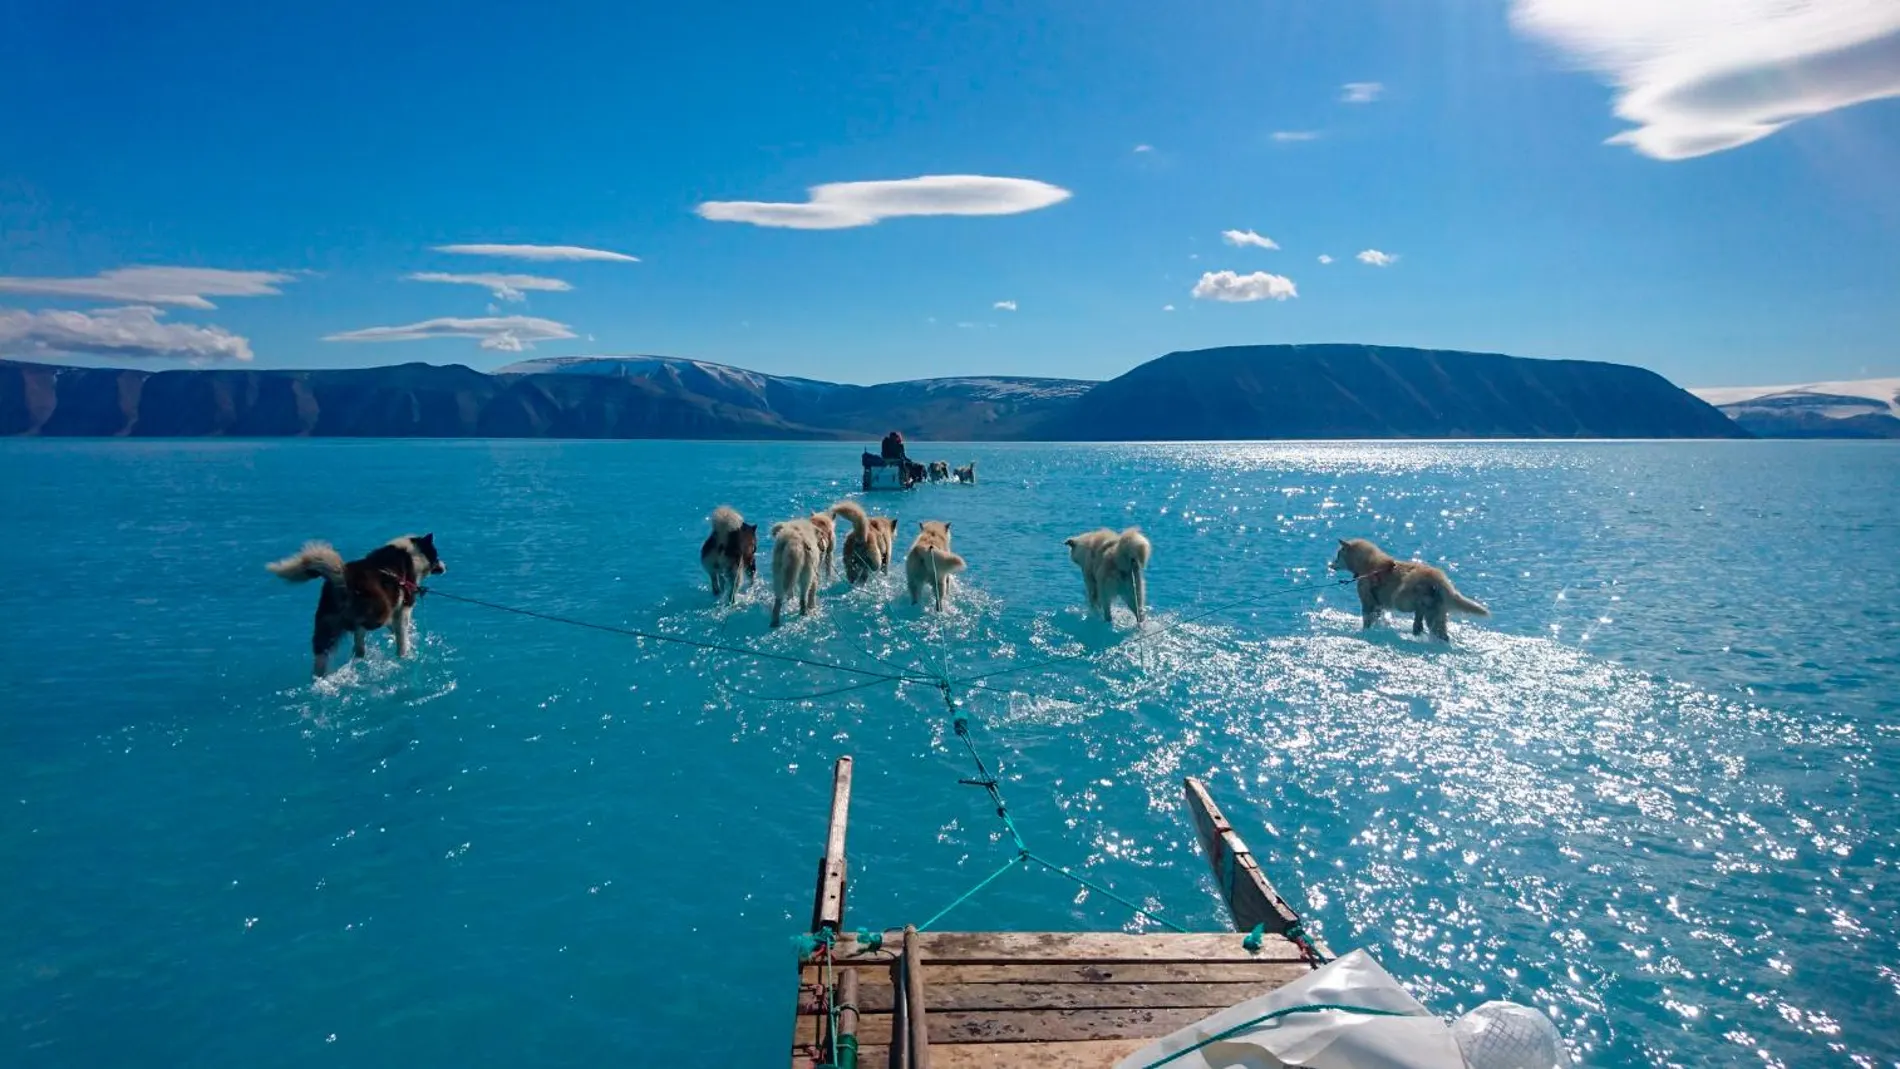 Imagen tomada en Groenlandia por un científico danés en la que el hielo ha quedado totalmente derretido